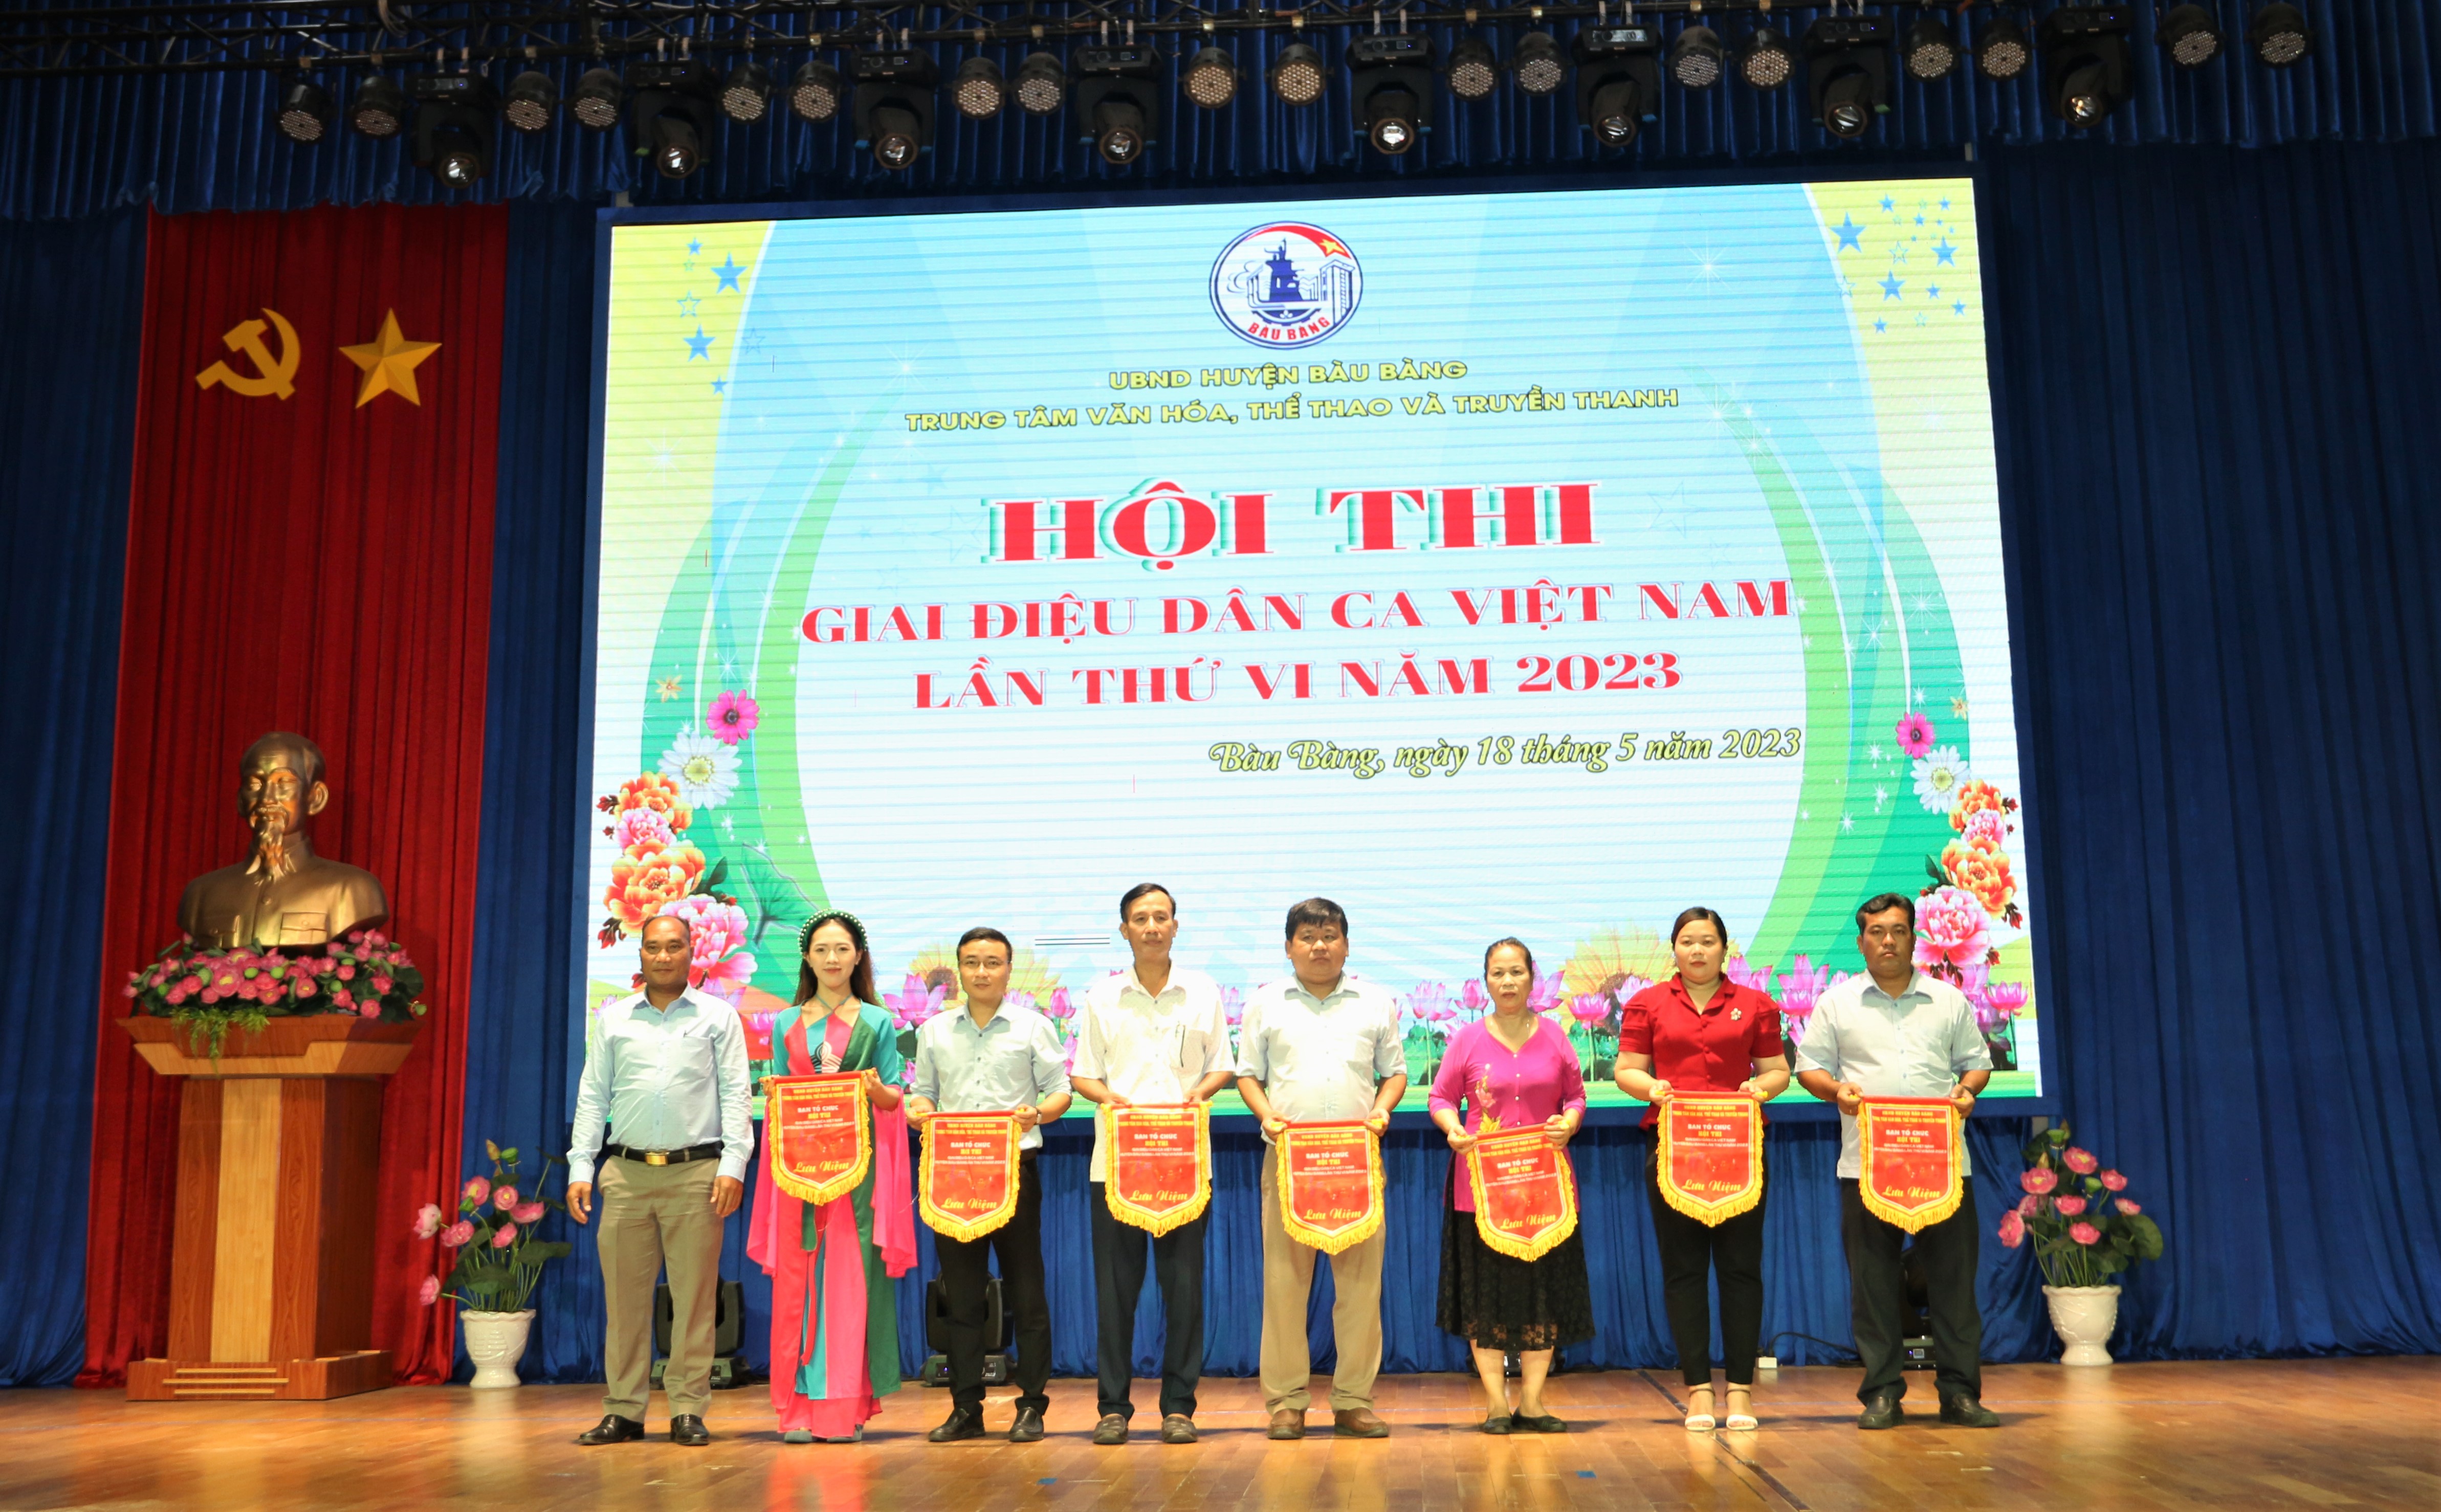 Hội thi “Giai điệu dân ca Việt Nam” huyện Bàu Bàng lần thứ VI.